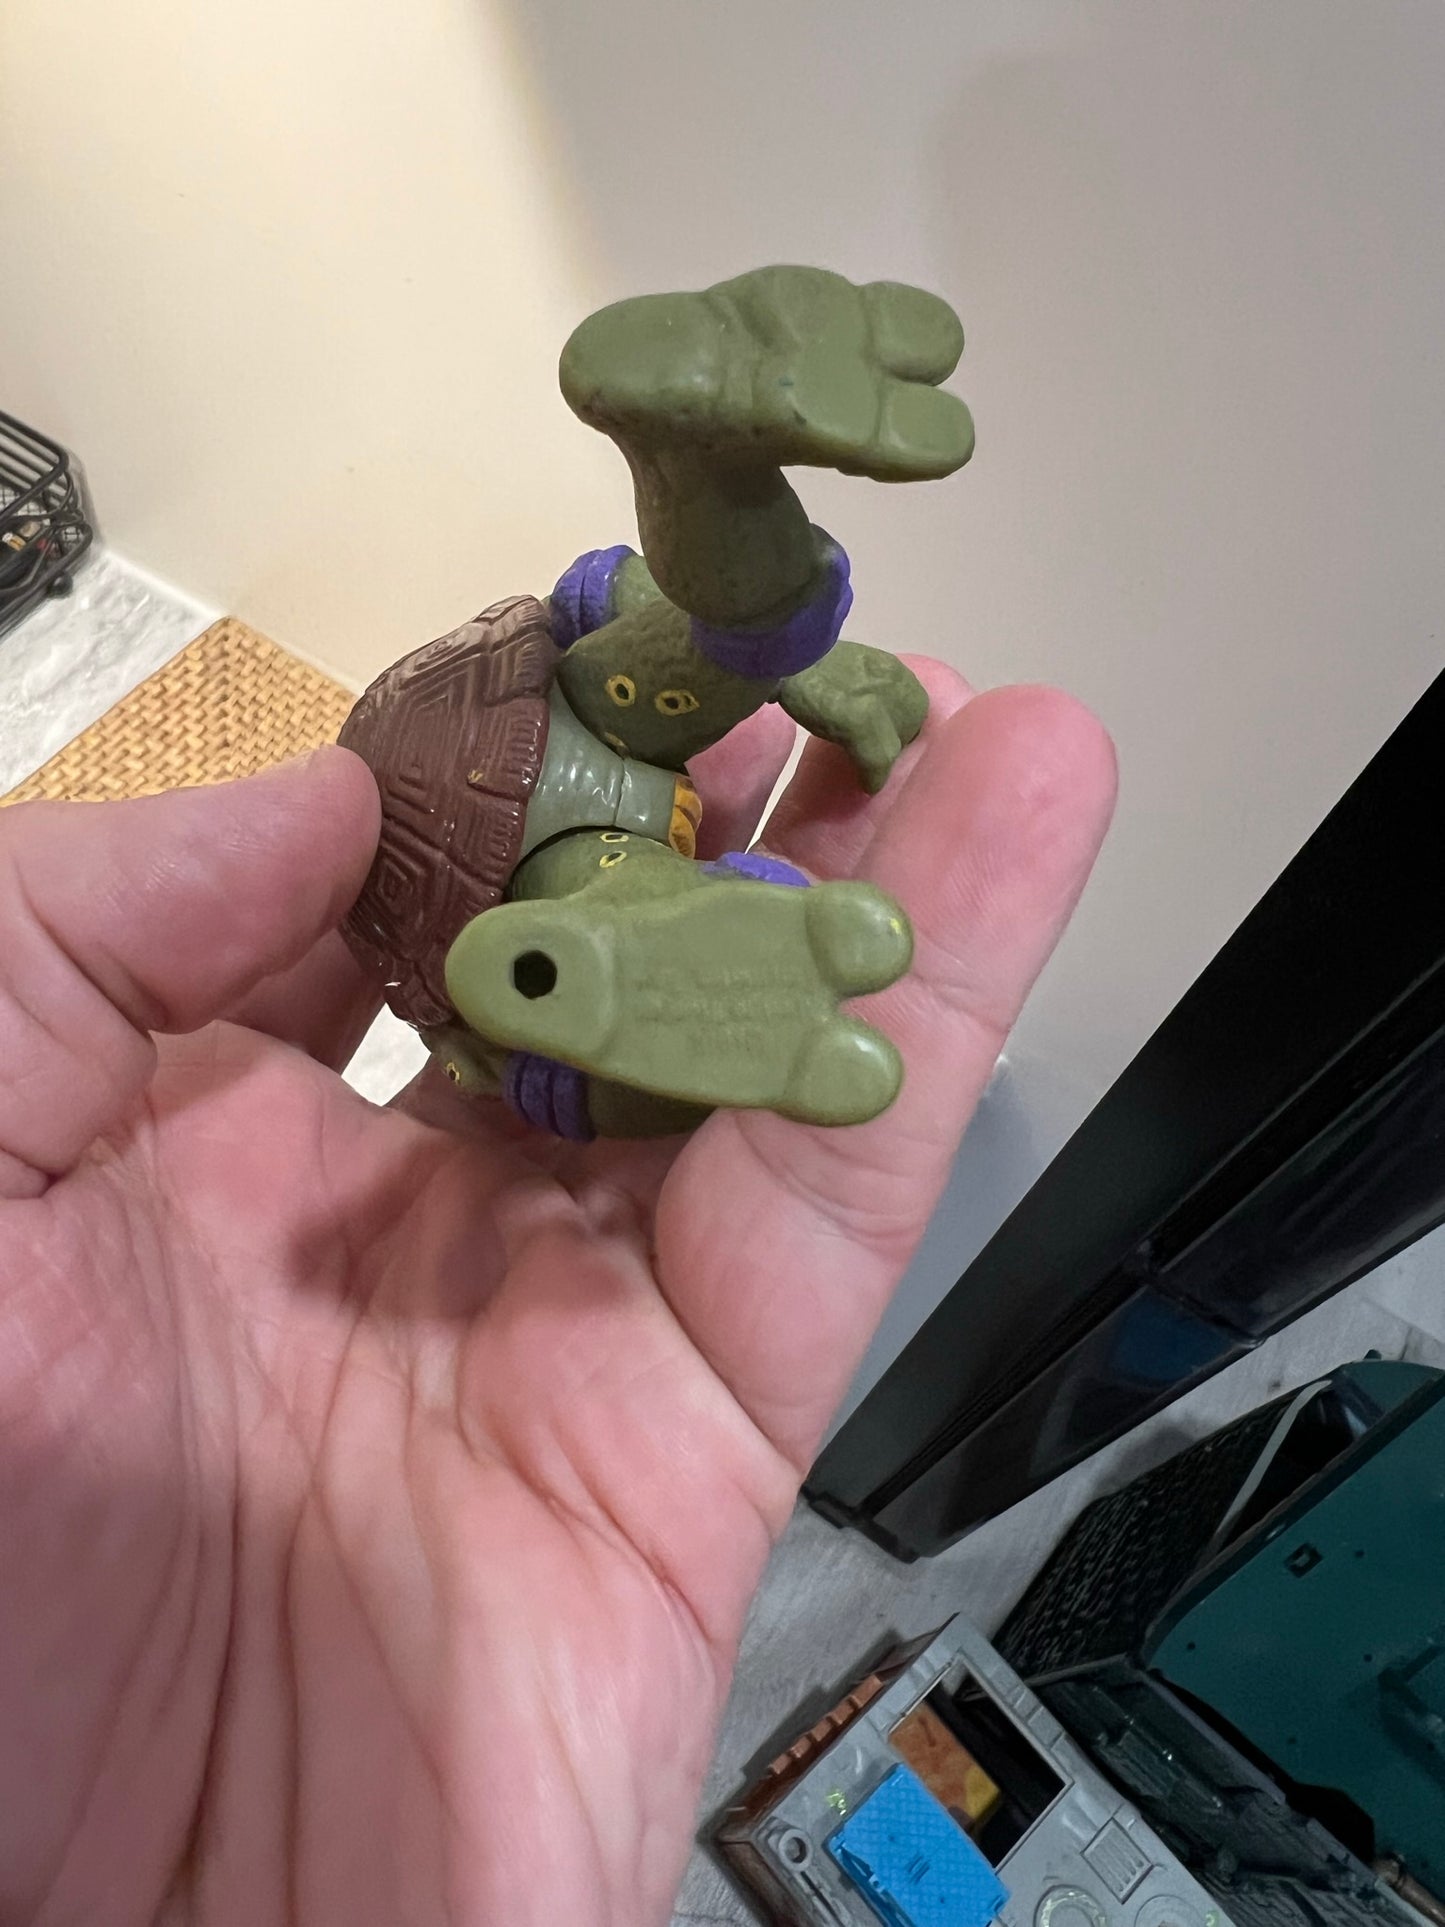 Movie Star Donatello 1992 Playmates Teenage Mutant Ninja Turtles Figure TMNT